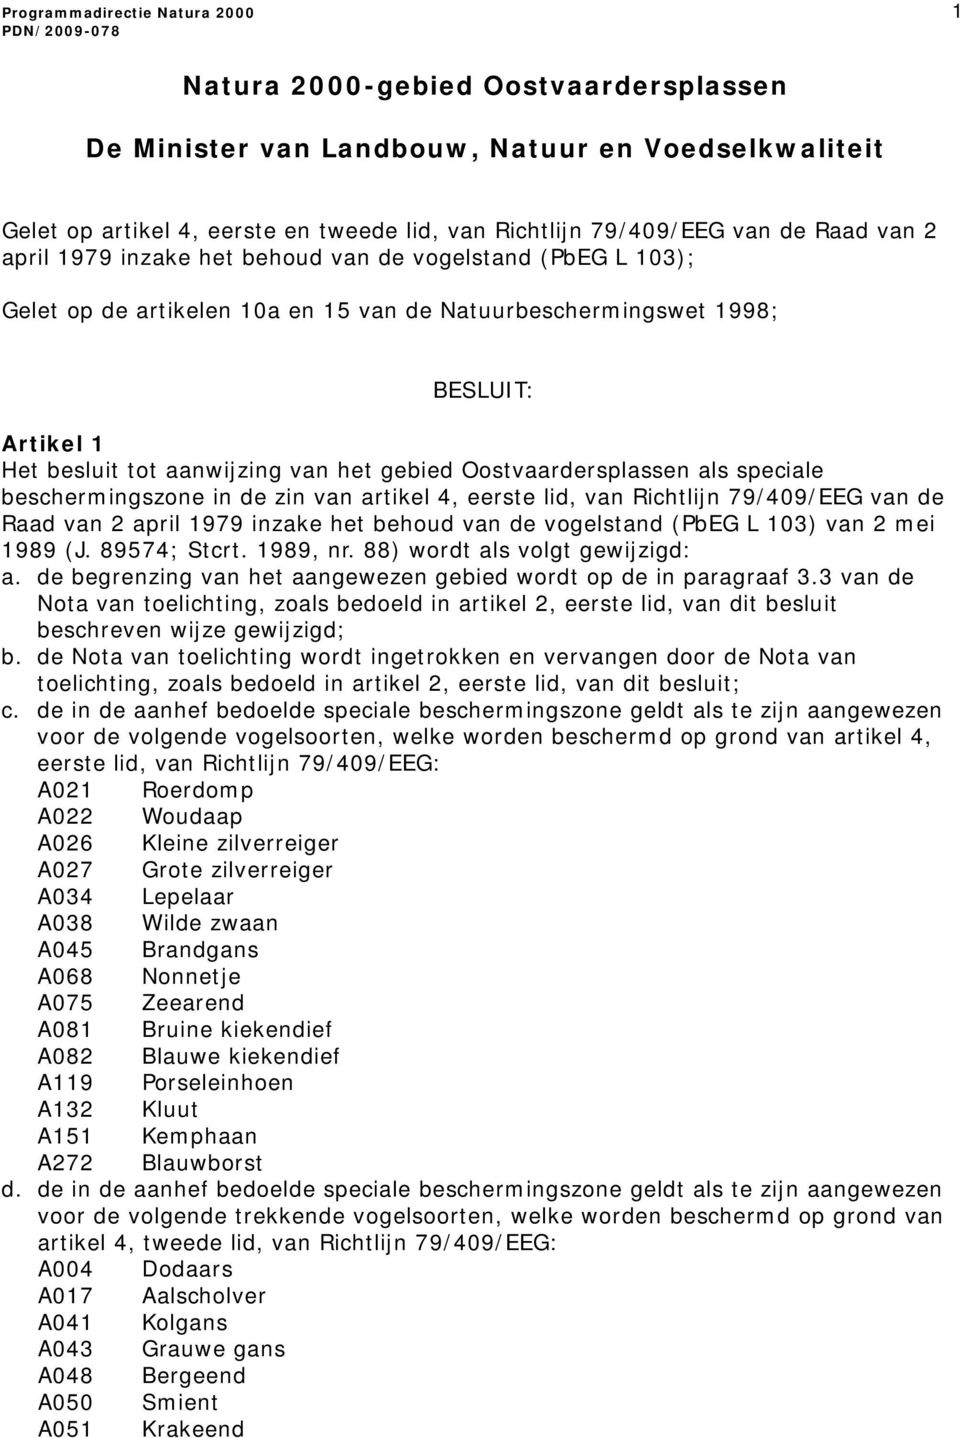 aanwijzing van het gebied Oostvaardersplassen als speciale beschermingszone in de zin van artikel 4, eerste lid, van Richtlijn 79/409/EEG van de Raad van 2 april 1979 inzake het behoud van de